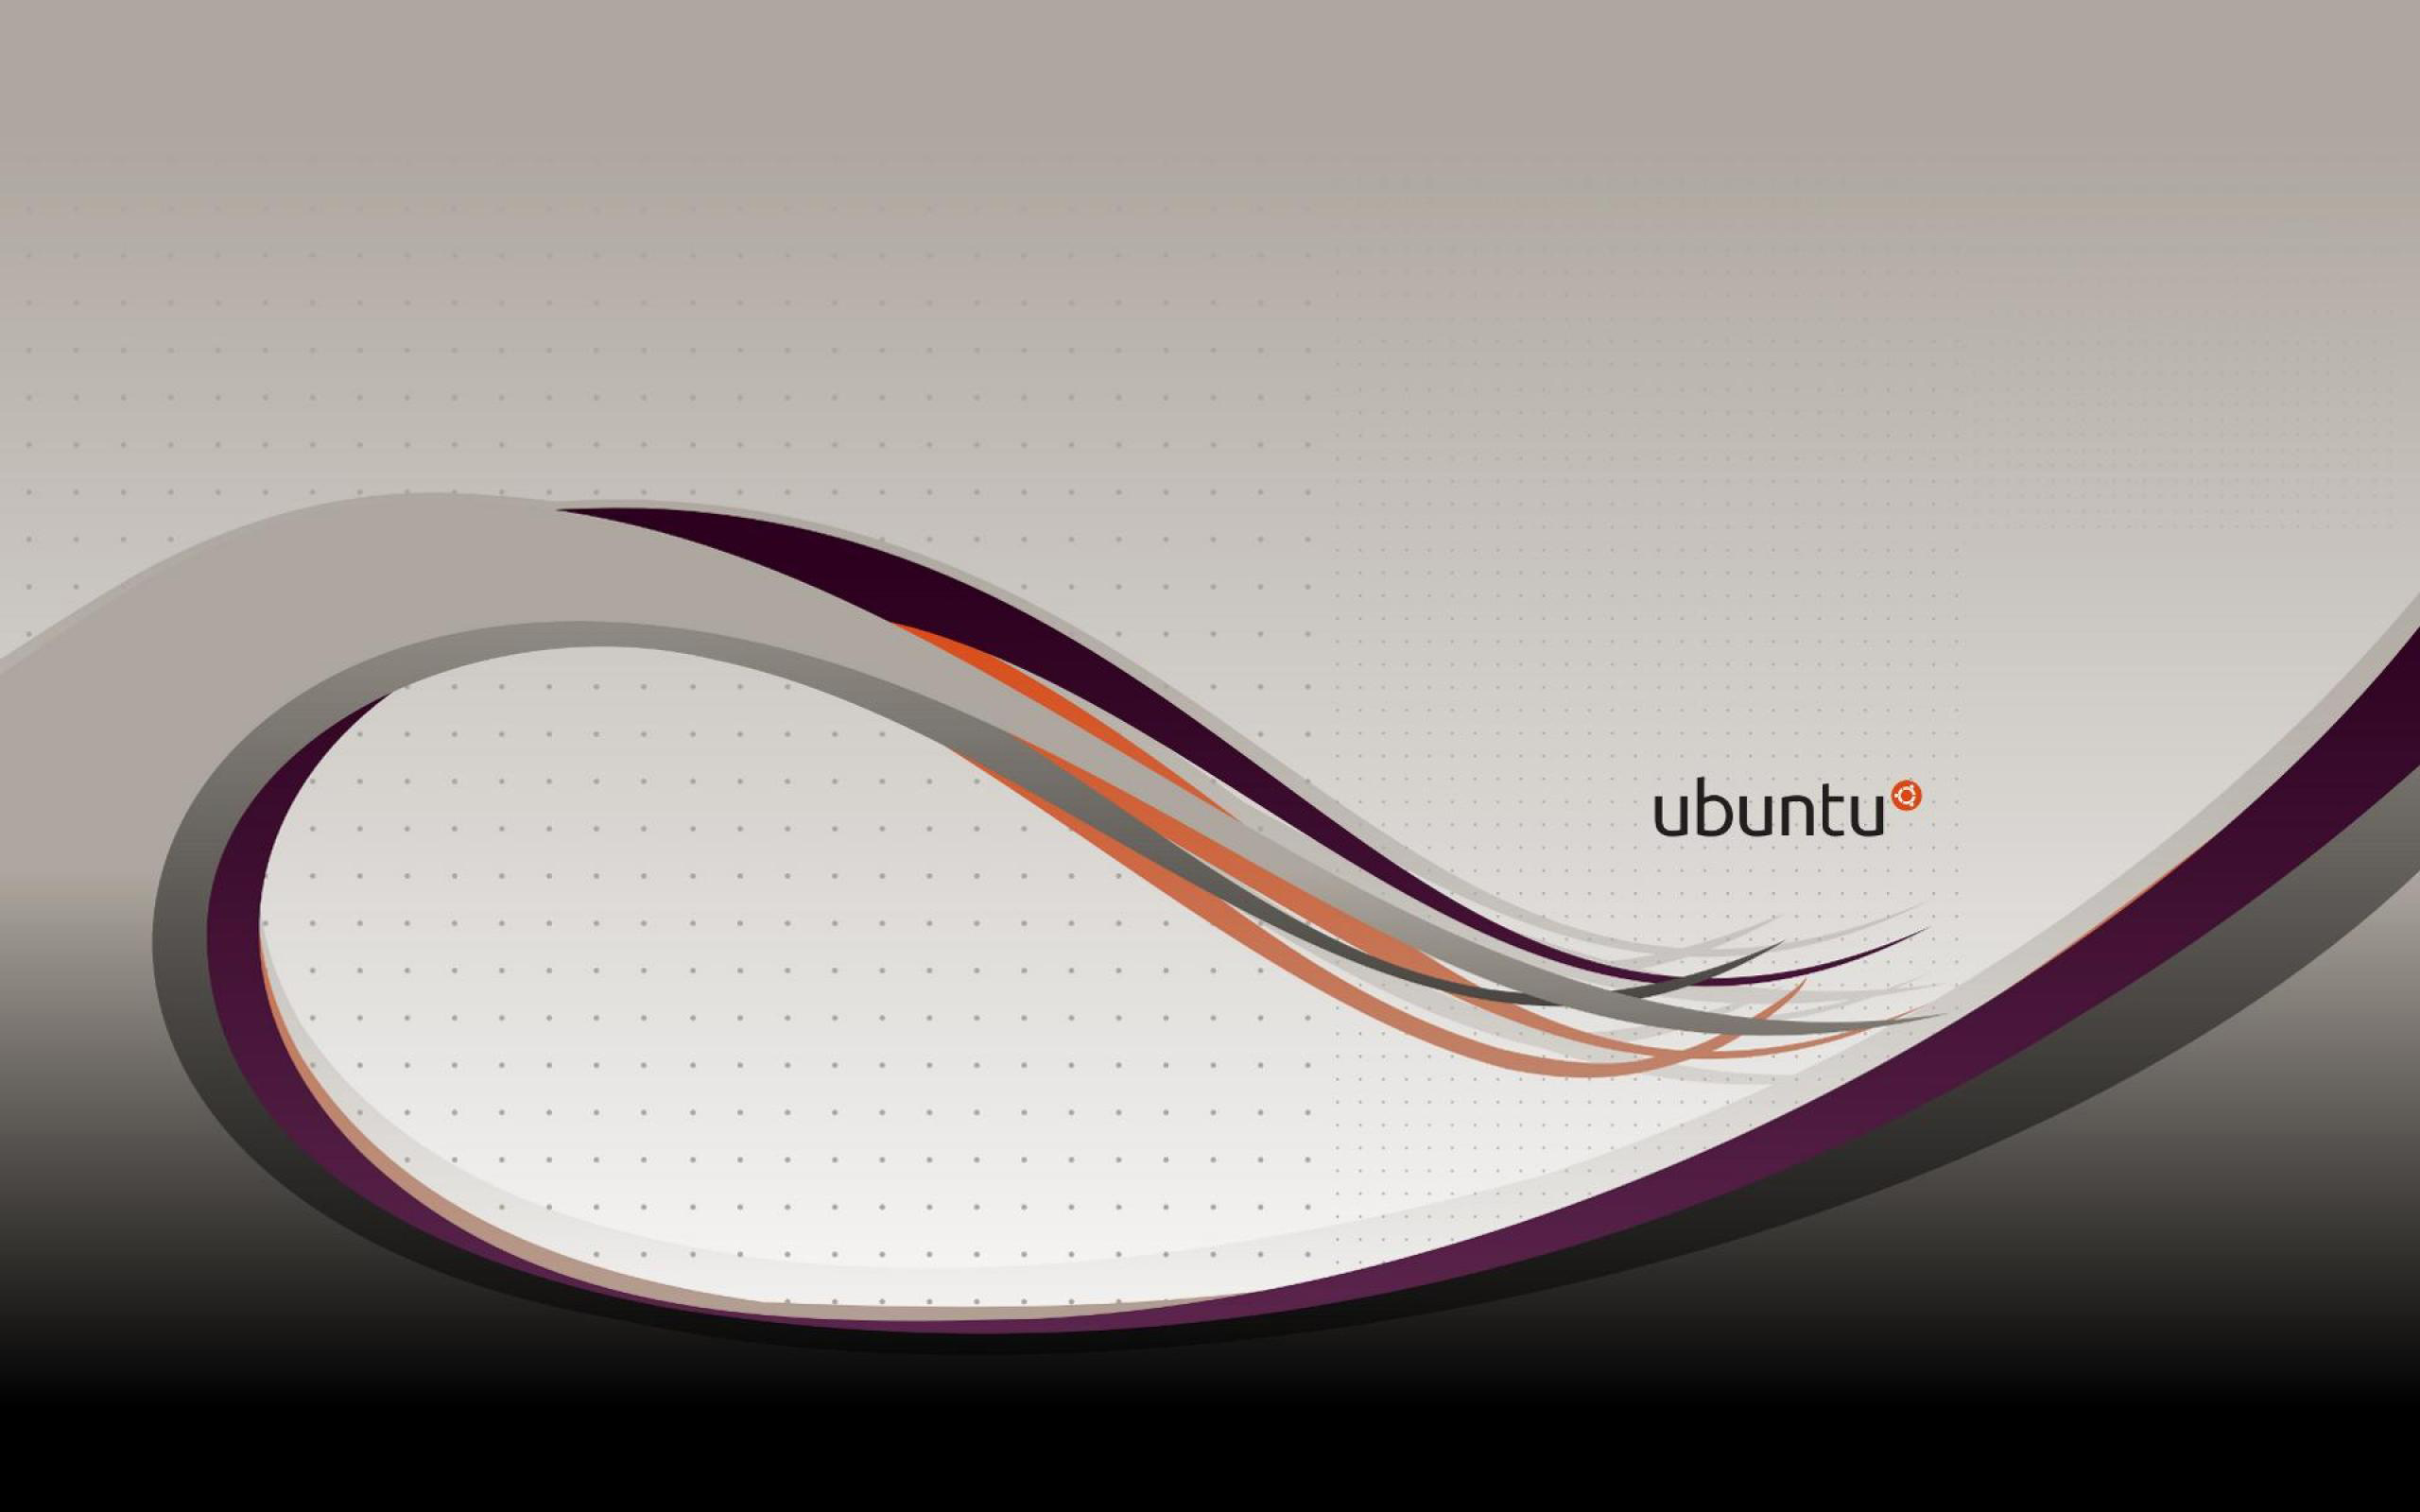 Tìm kiếm những bức hình nền Ubuntu đẹp miễn phí để tạo không gian làm việc ấn tượng cho máy tính cá nhân của bạn. Free Ubuntu wallpapers sẽ mang lại cho bạn cảm giác thư giãn và tràn đầy sáng tạo.